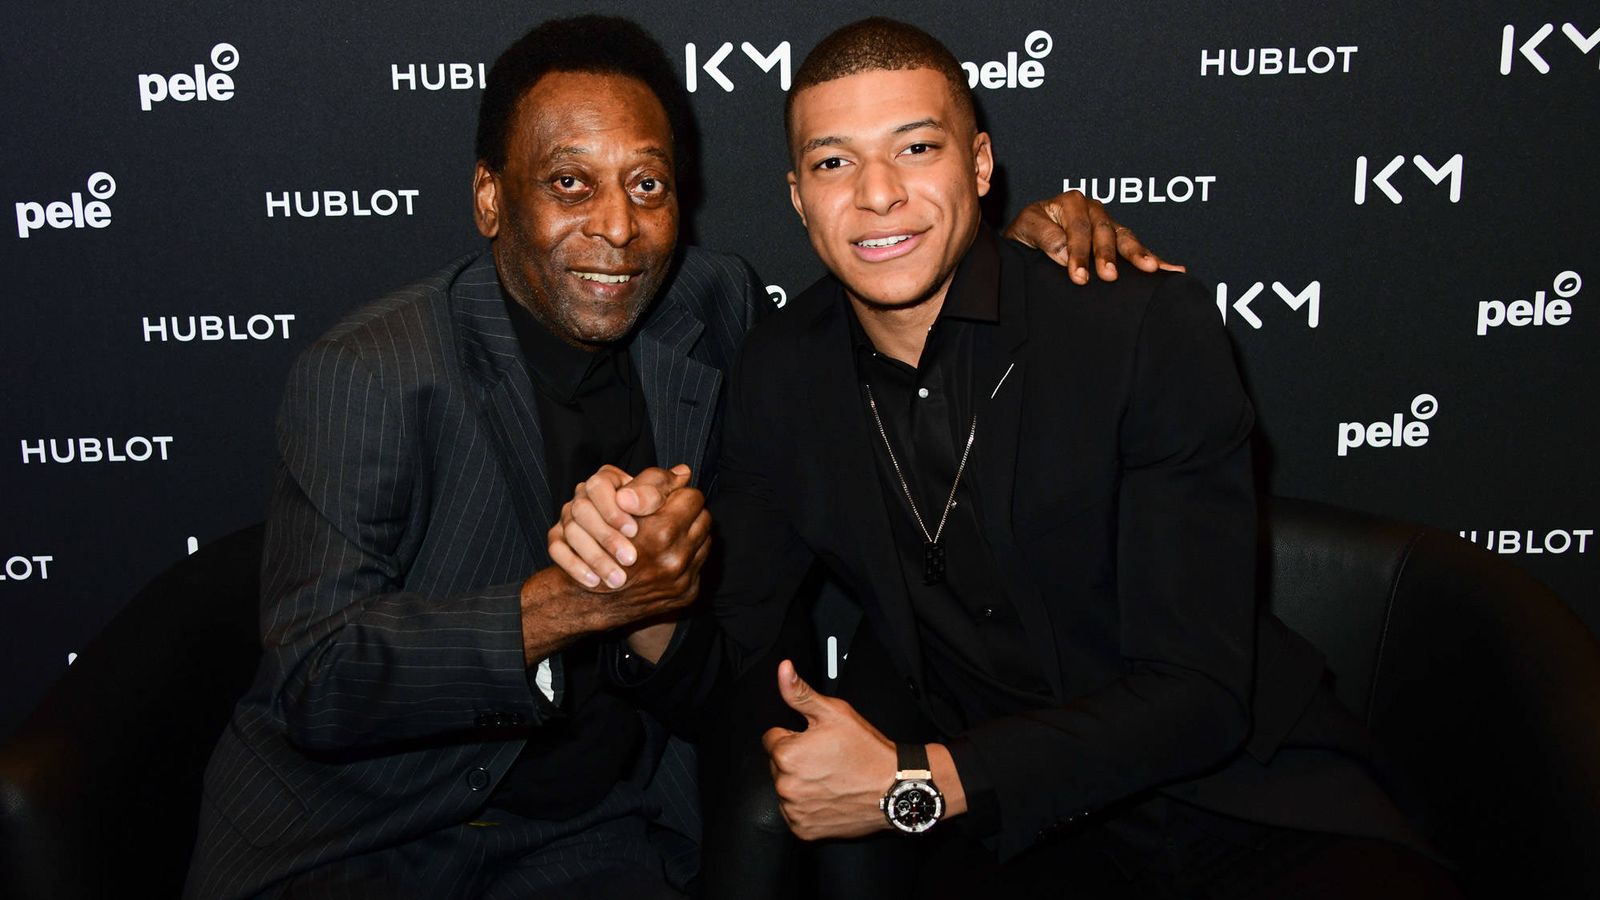 Pelé y Kylian Mbappé en un encuentro para la marca de relojes Hublot.